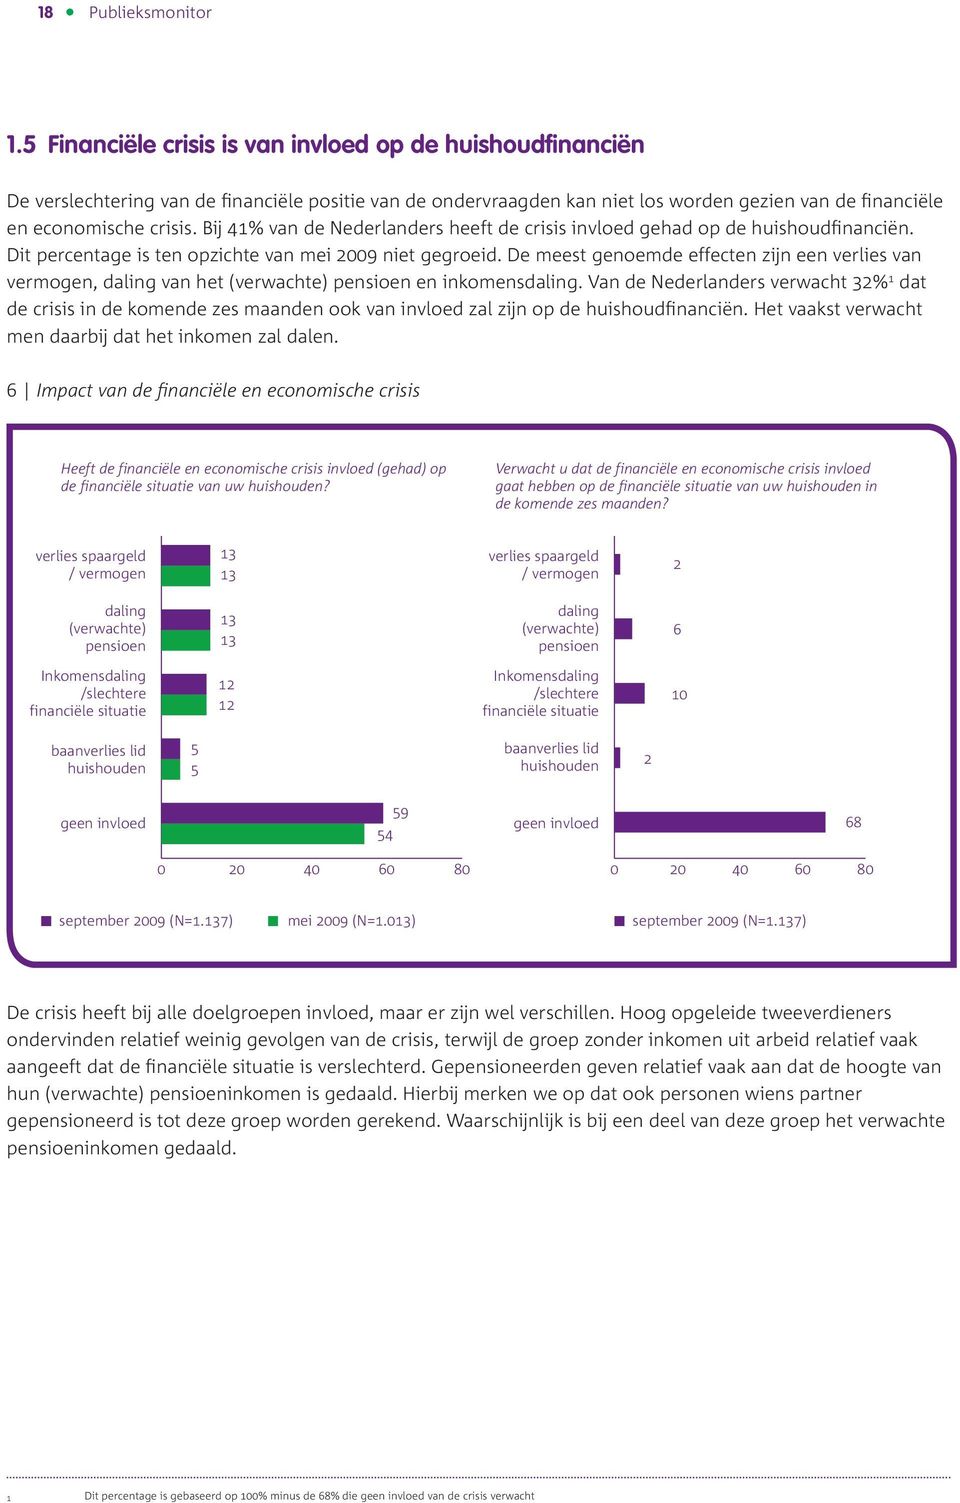 Bij 41% van de Nederlanders heeft de crisis invloed gehad op de huishoudfinanciën. Dit percentage is ten opzichte van mei 09 niet gegroeid.